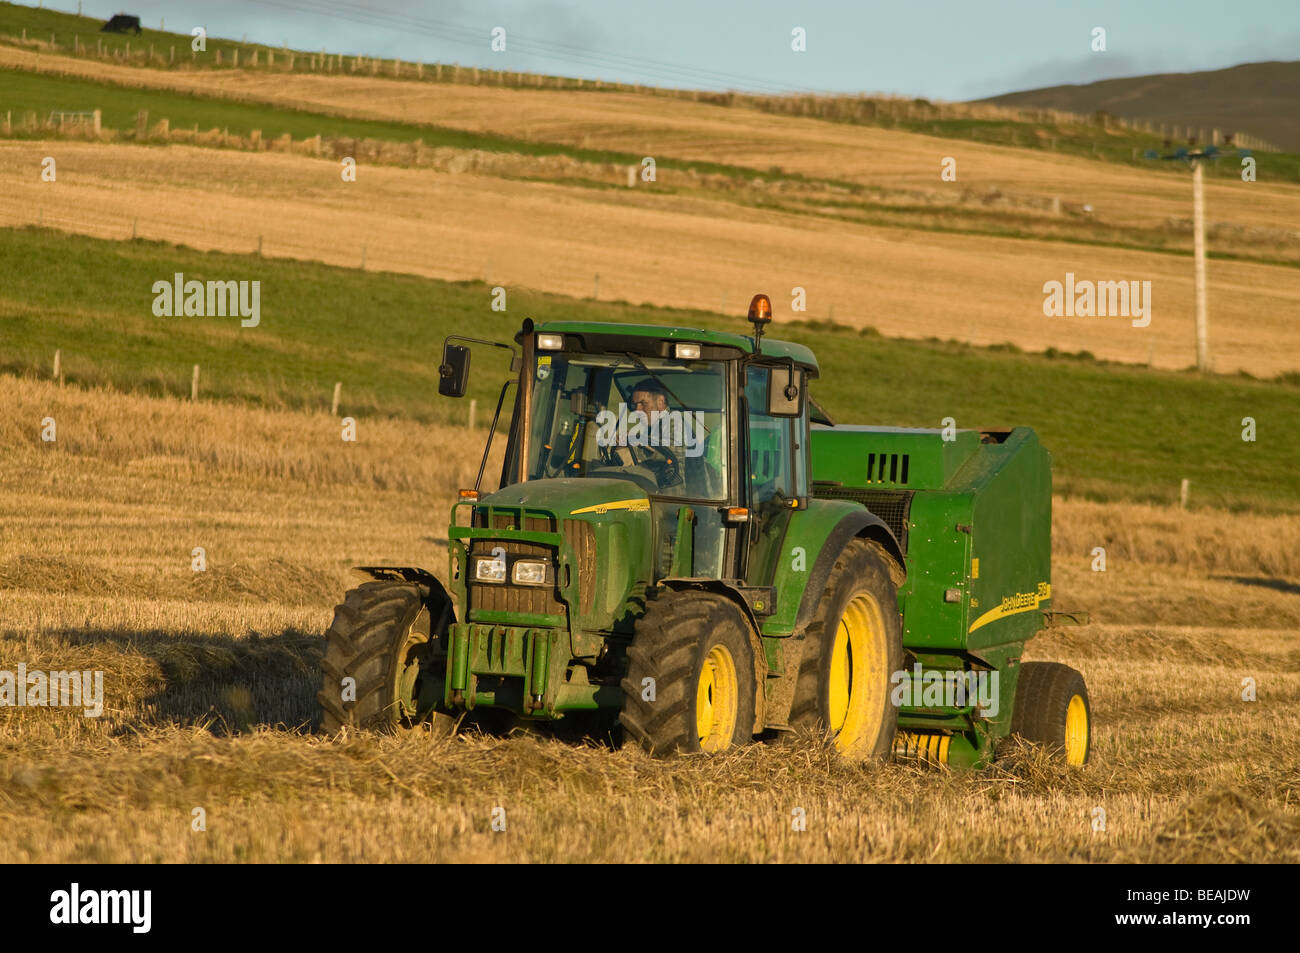 tracteur dh John Deere RAMASSEUSE-presse RÉCOLTE Royaume-Uni pressage de balles de foin de champ agriculture récolte agricole machines agricoles vertes tracteurs Banque D'Images